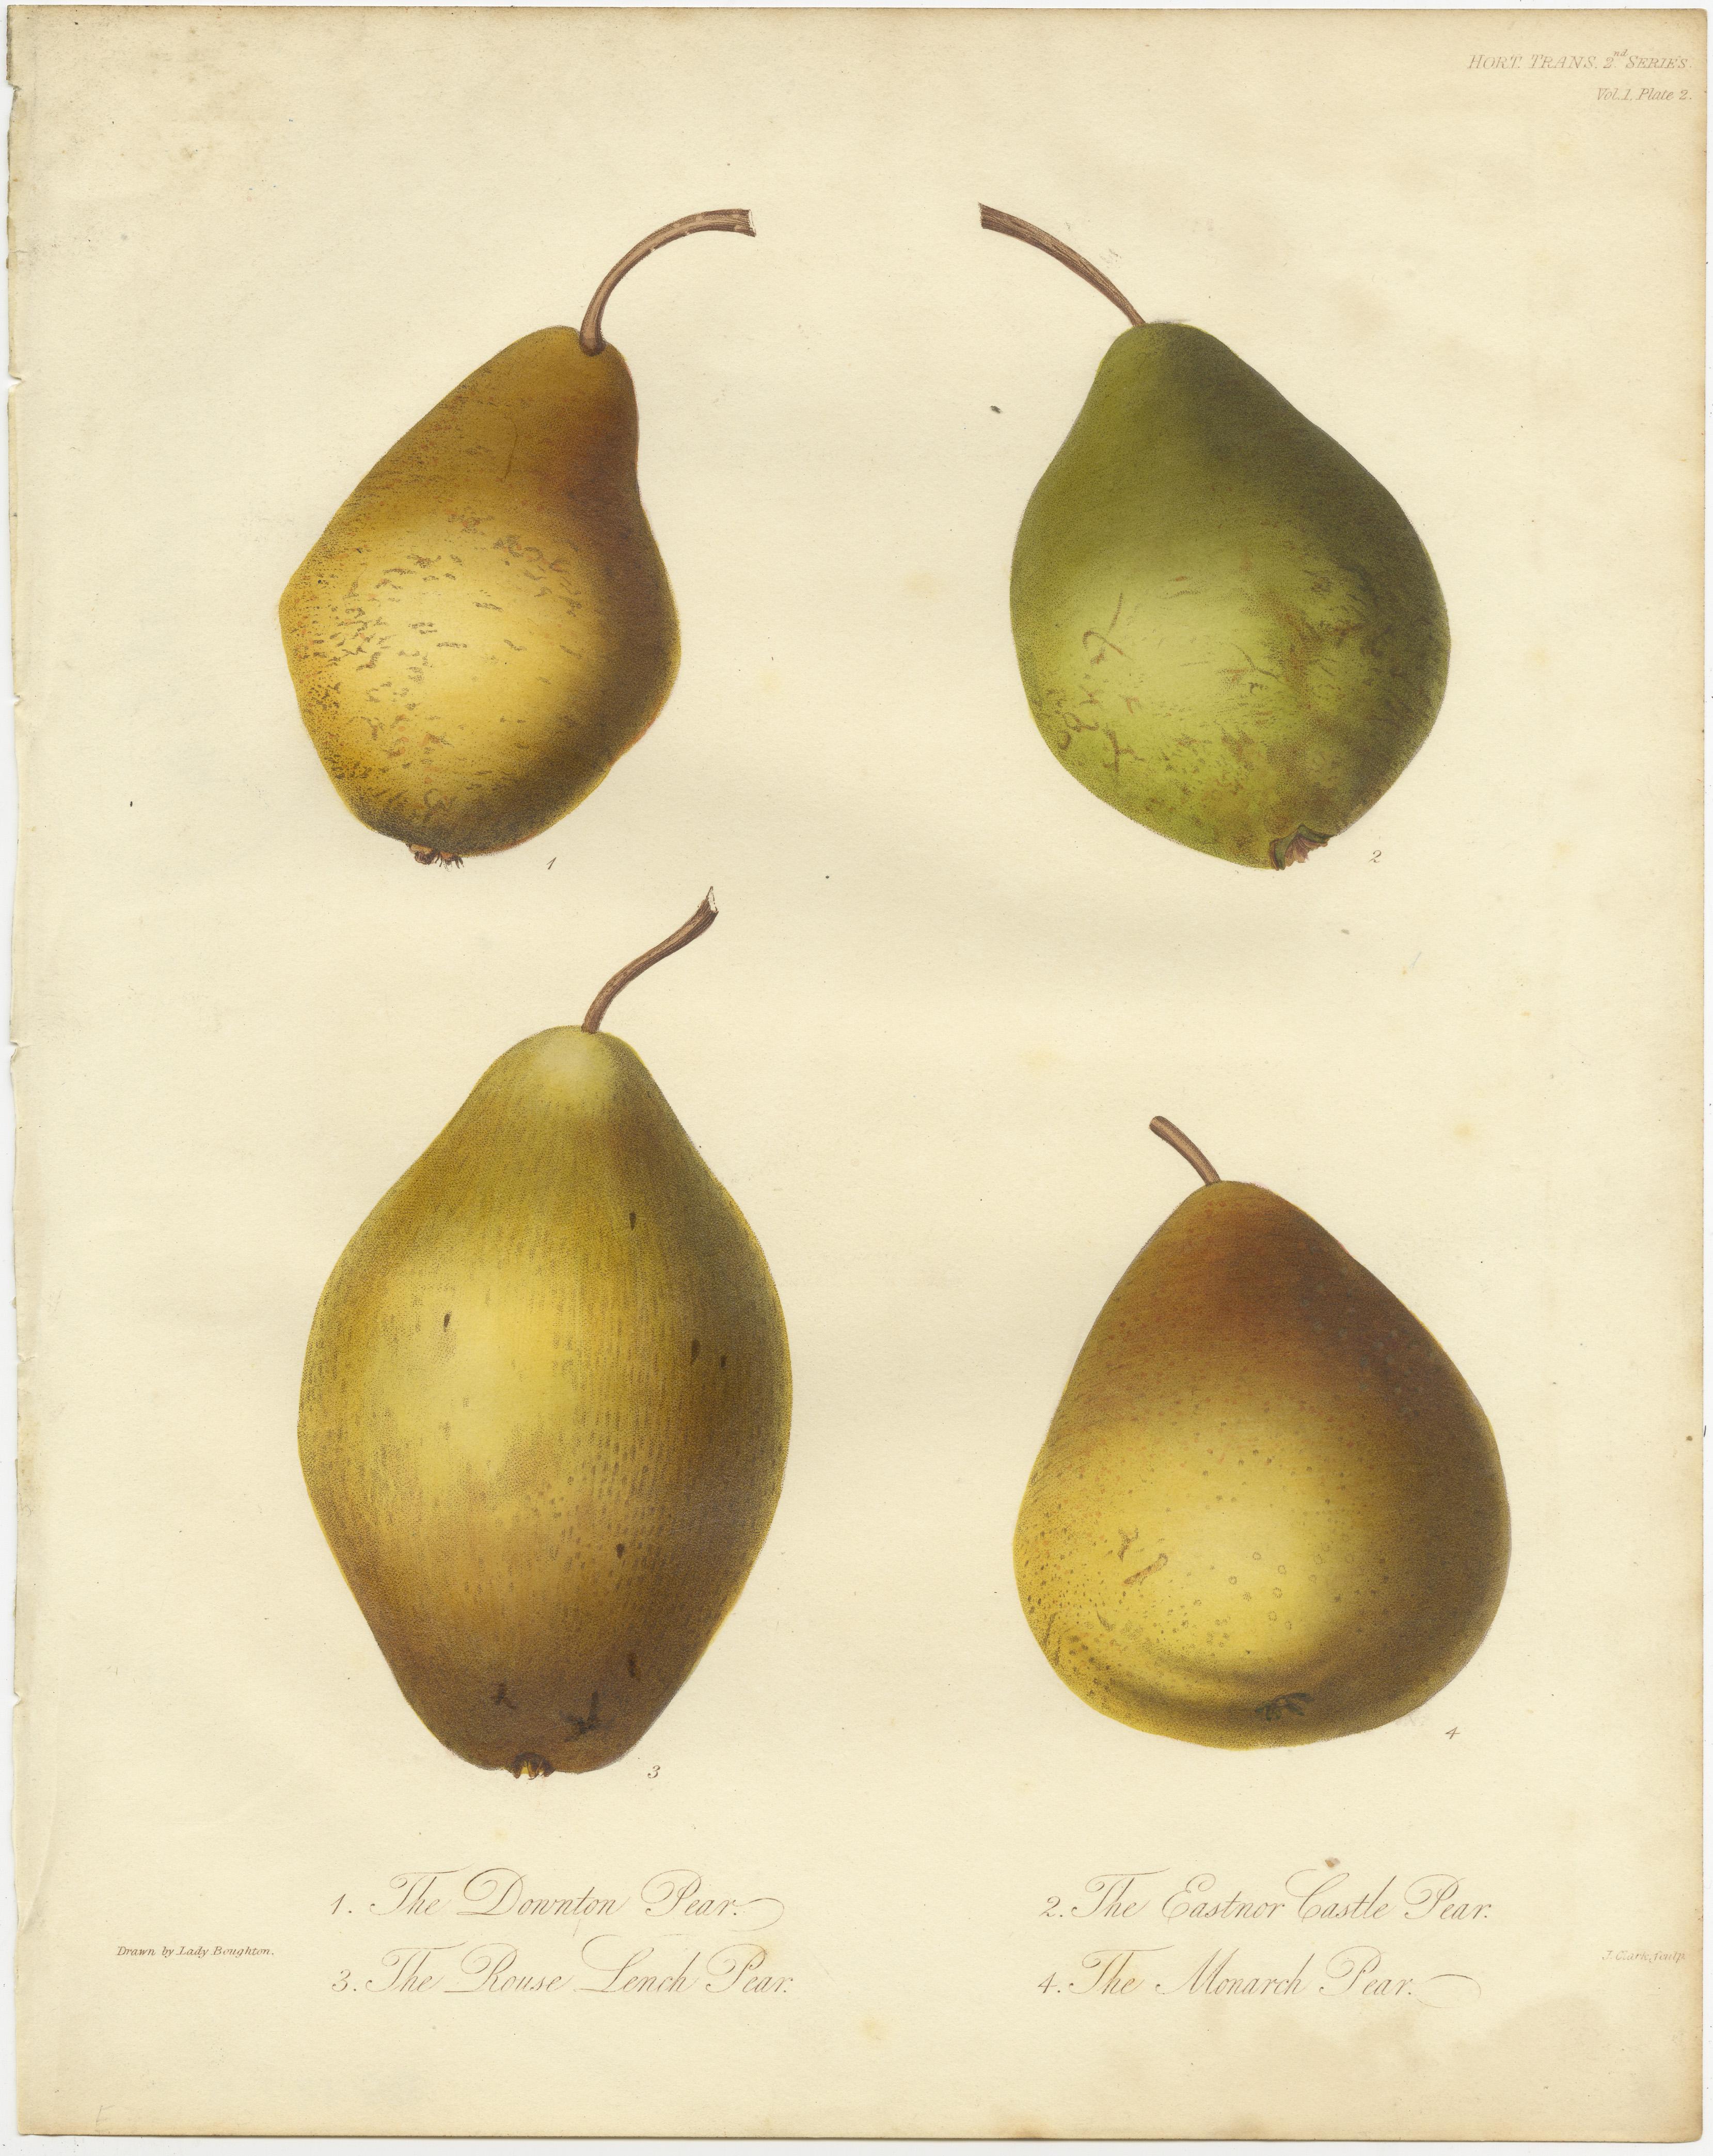 Ensemble de 2 gravures anciennes représentant des poires et des pommes. Elle montre la poire Downton, la poire Rouse Lench, la poire Eastnor Castle, la poire Monarch et la pomme Malcarle ou Charles. Ces gravures proviennent des 